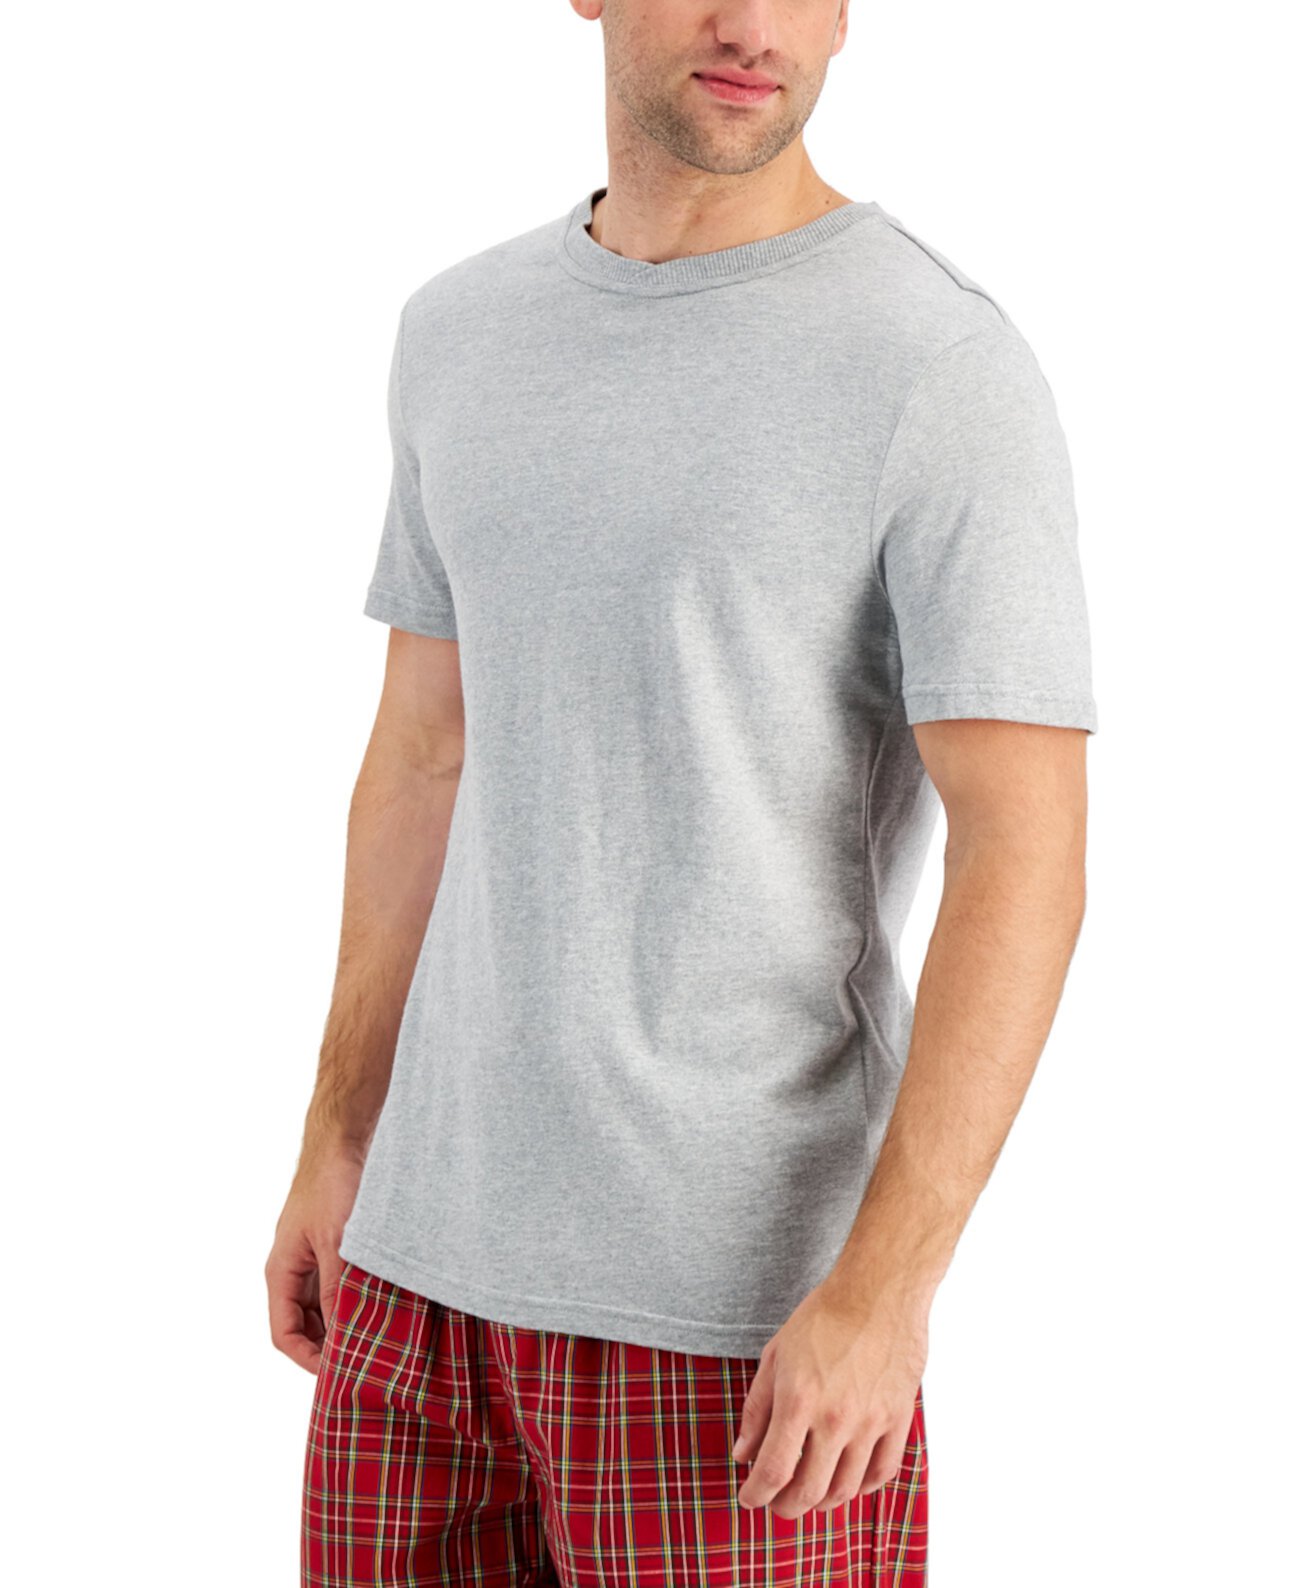 Мужская пижамная футболка, созданная для Macy's Club Room